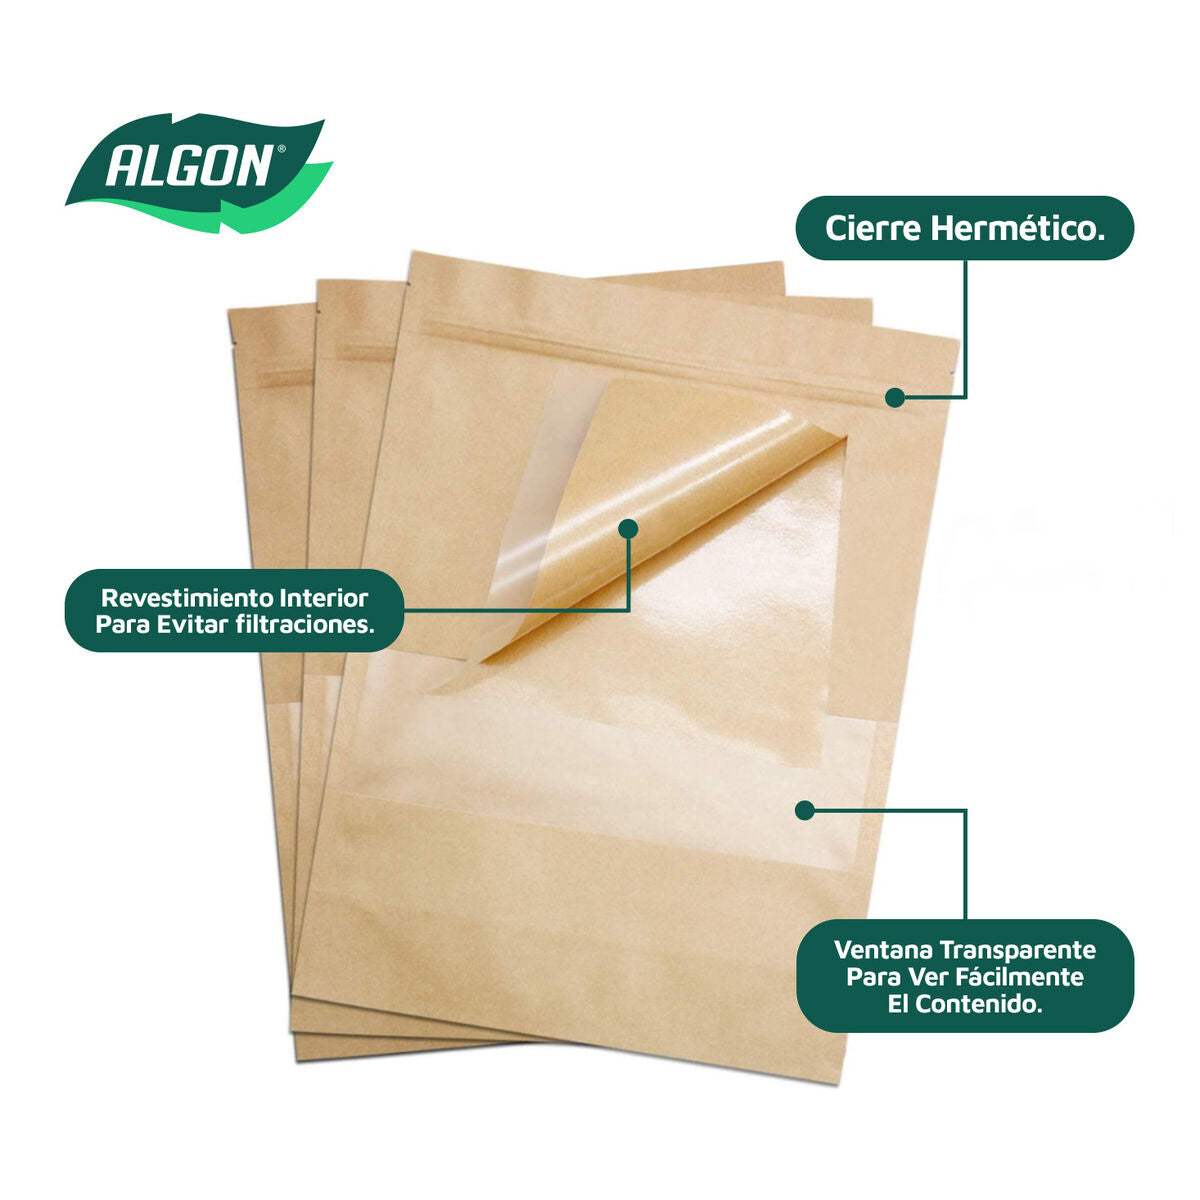 Ensemble de sacs alimentaires réutilisables Algon Fermeture hermétique 14 x 20 x 4 cm 12 Unités